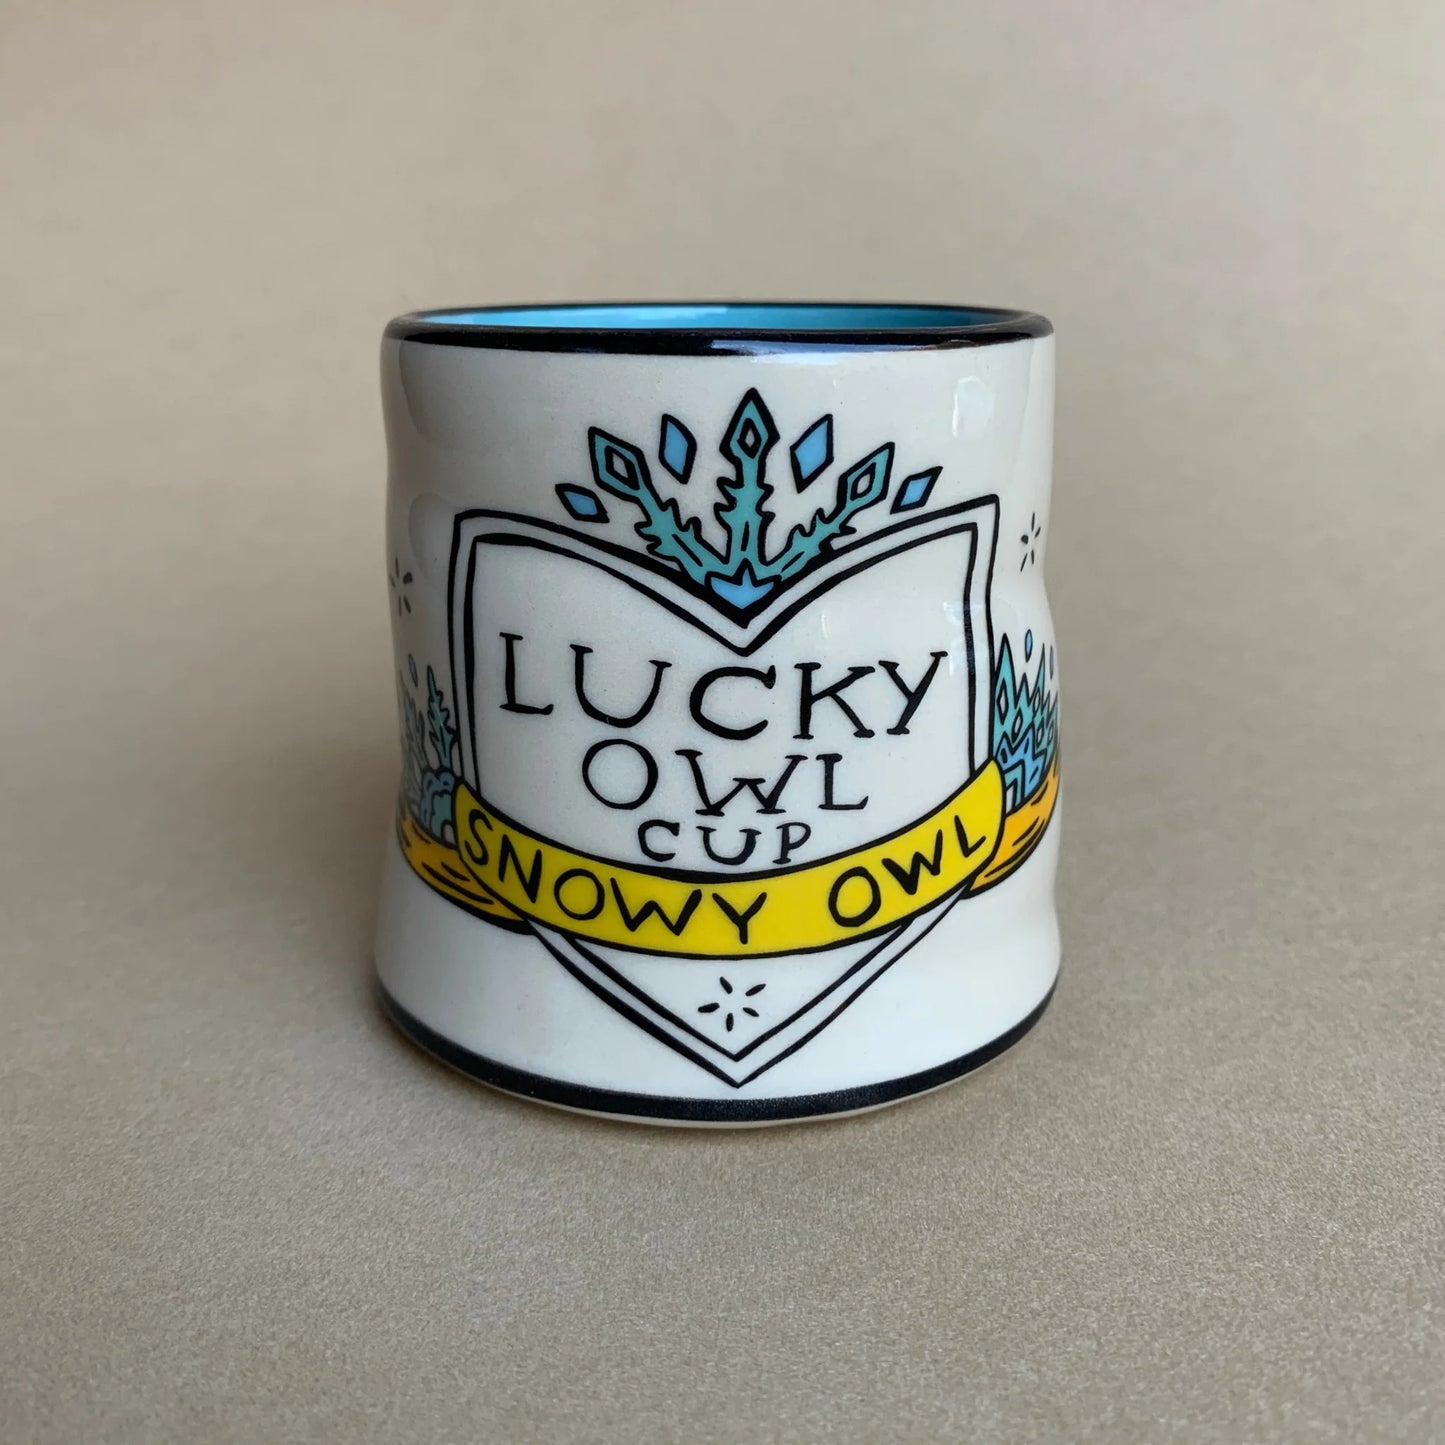 Lucky Snowy Owl Cup - 6oz, Medium